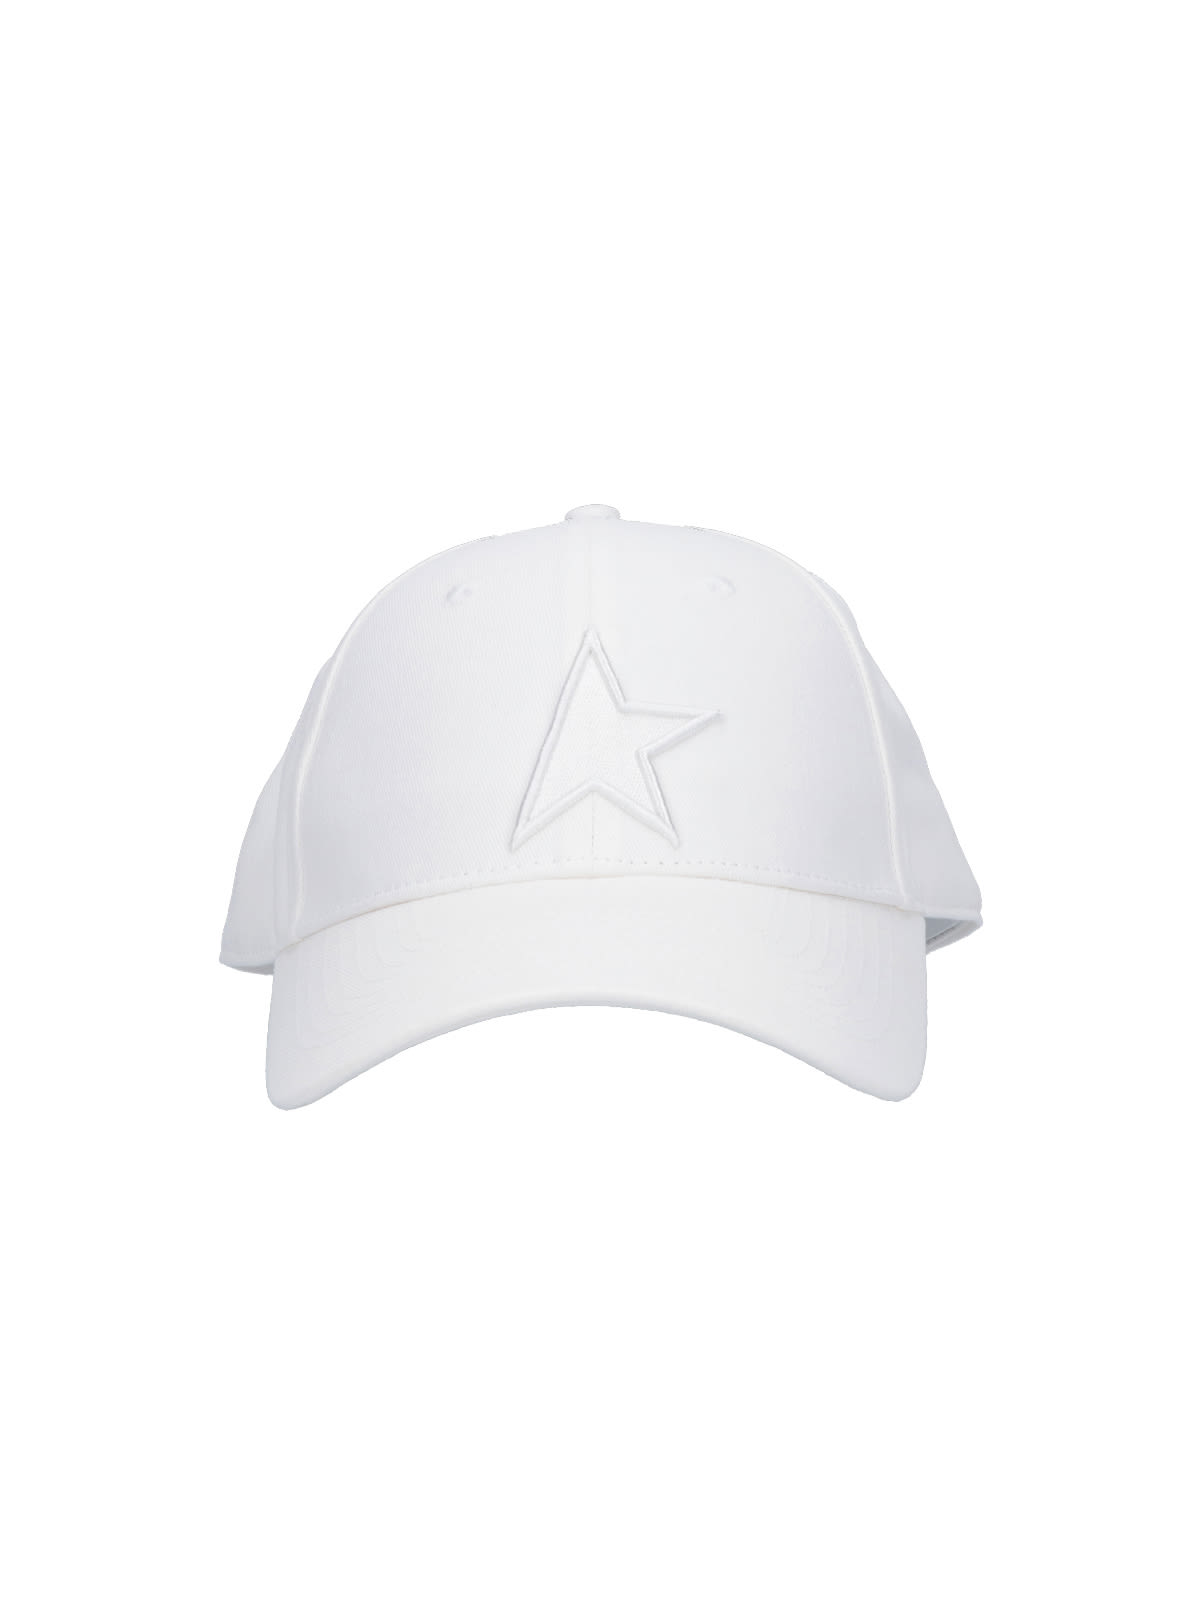 Golden Goose Star Baseball Cap In White